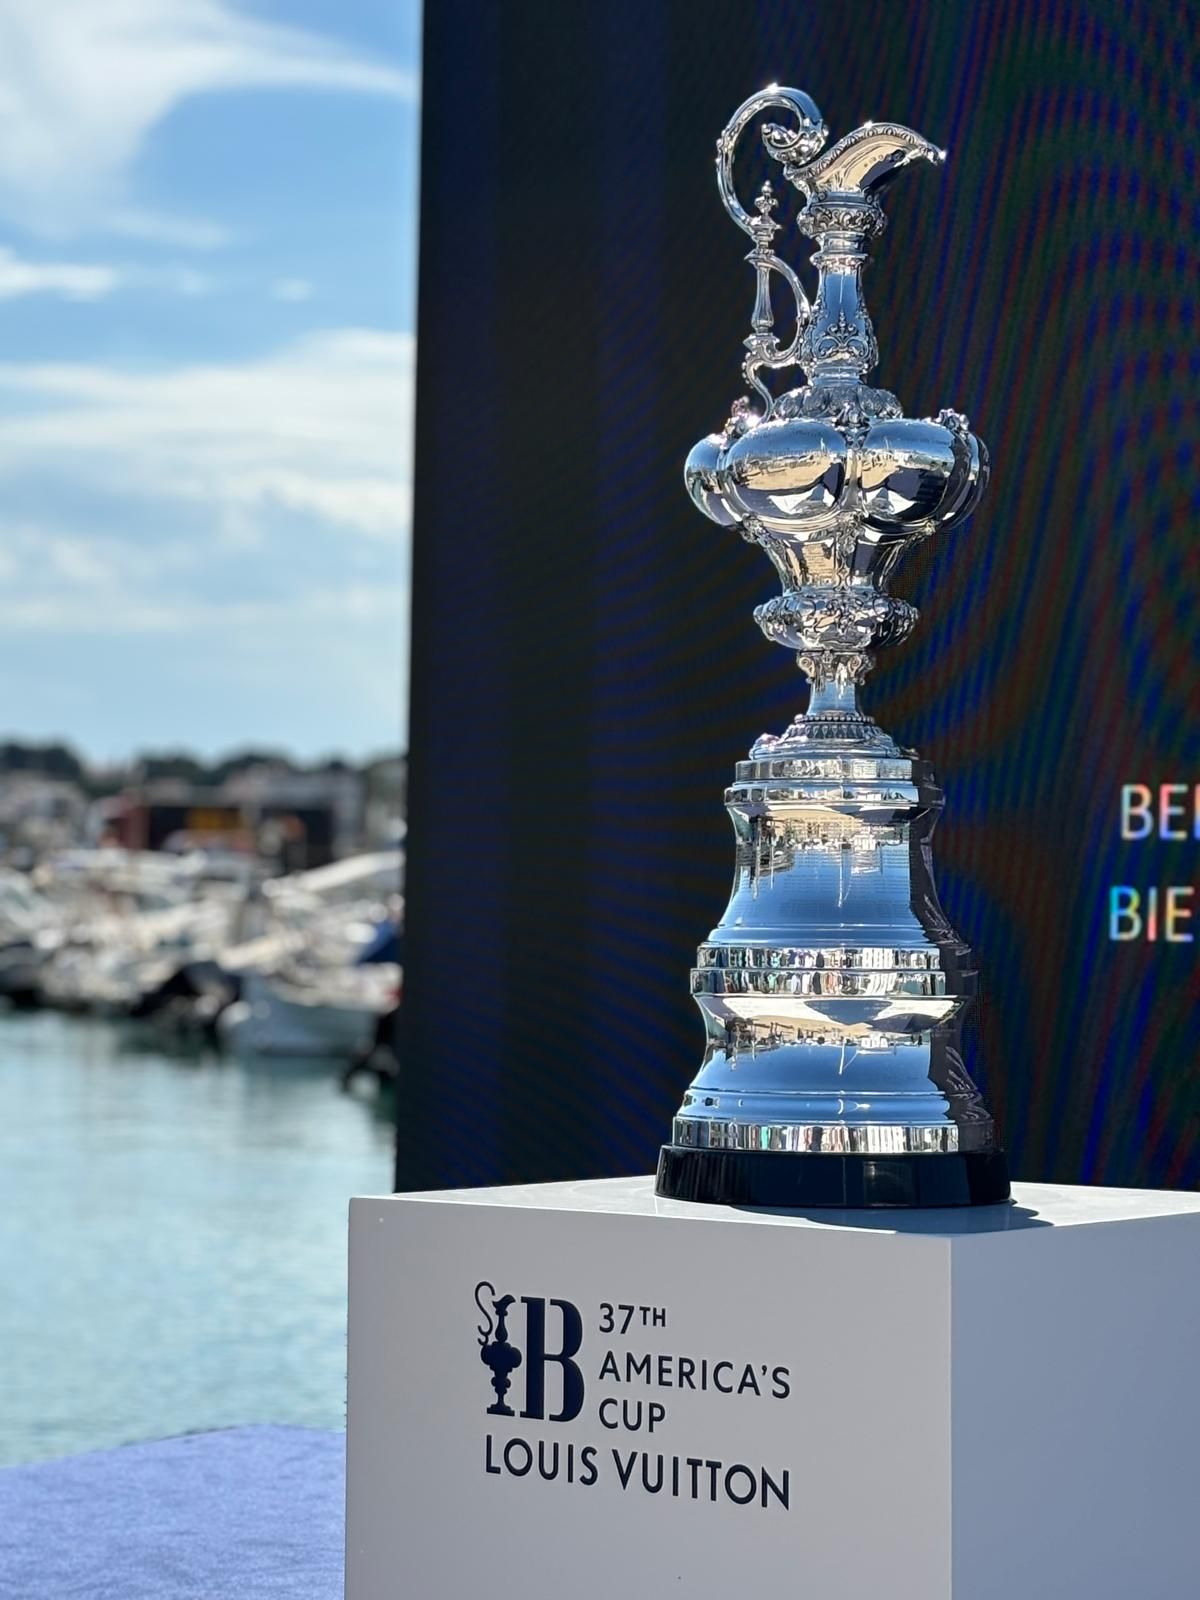 Les imatges del trofeu de la Copa Amèrica arribant al Club Nàutic l'Escala